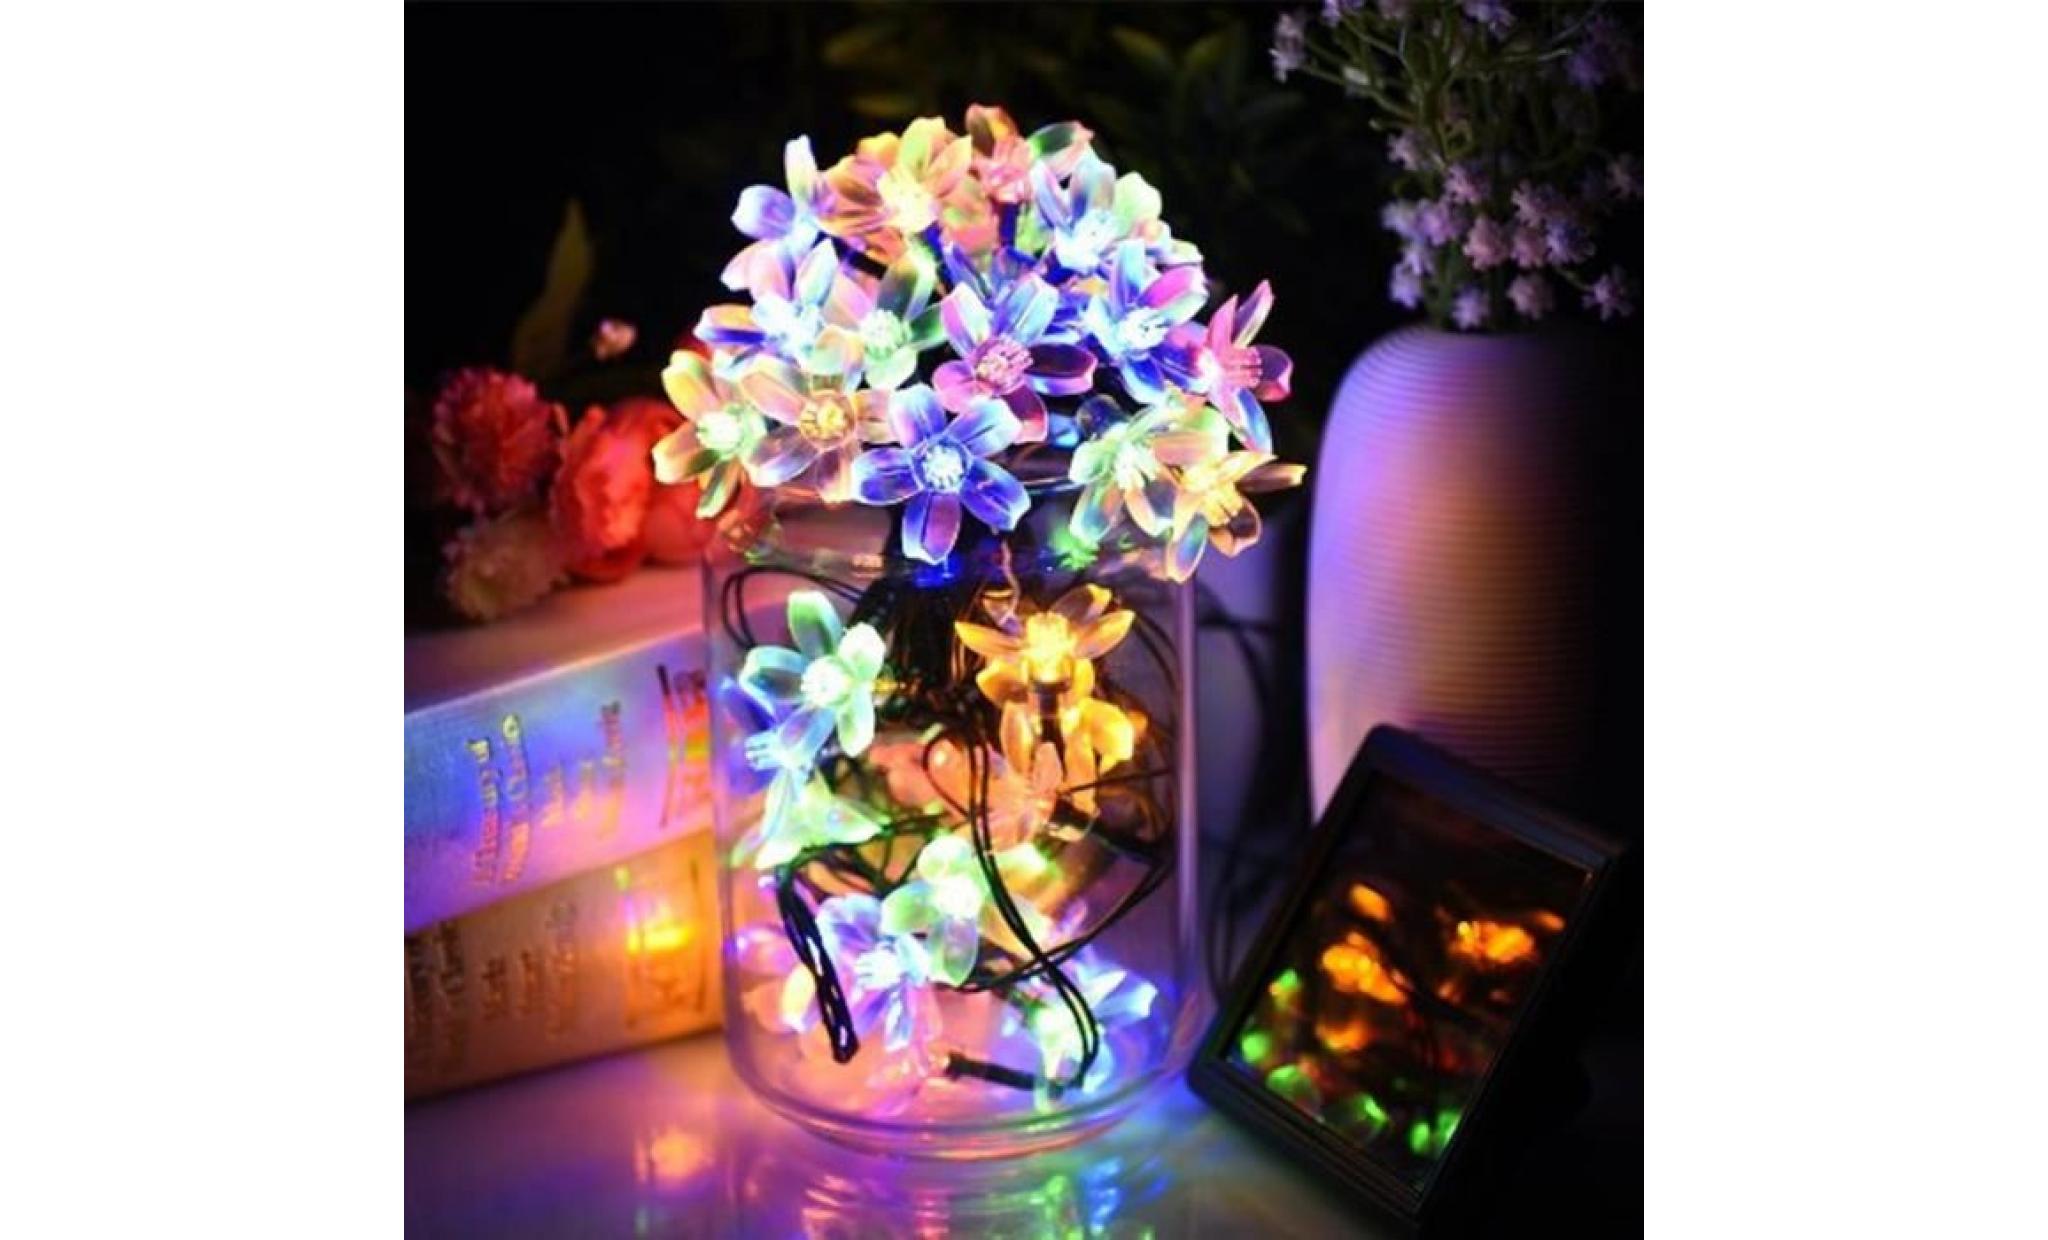 guirlande lumineuse extérieur solaire fée lumière 7 m multi couleur 50 led fleurs éclairage décoration pour noël, fête, jardin (mult pas cher